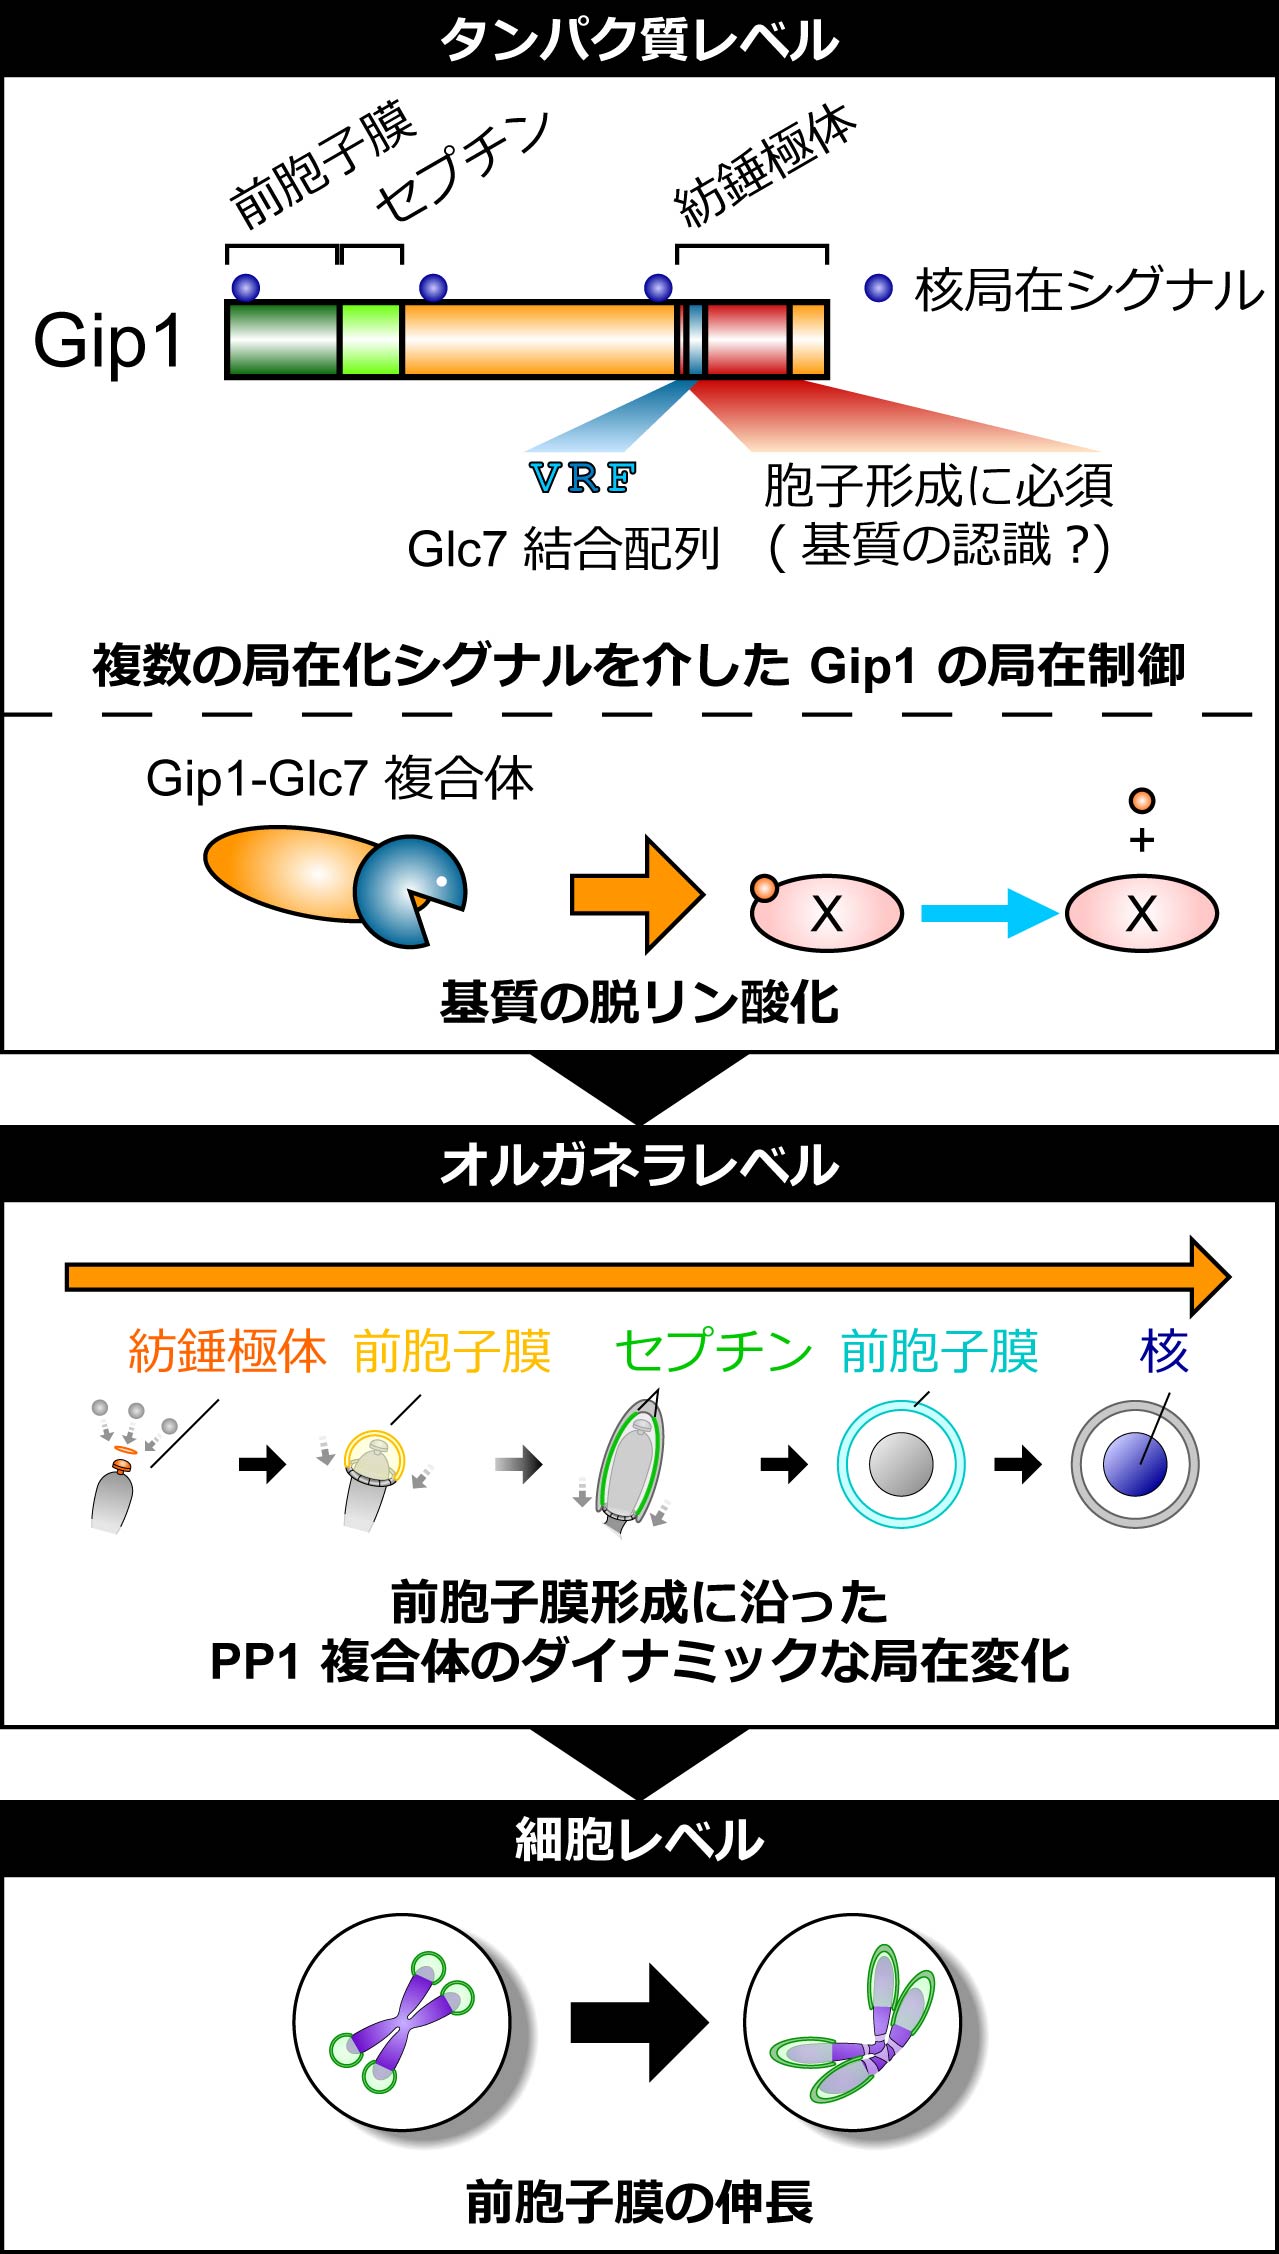 1型プロテインホスファターゼ (PP1) 複合体による生体膜形成の制御機構の一端を解明